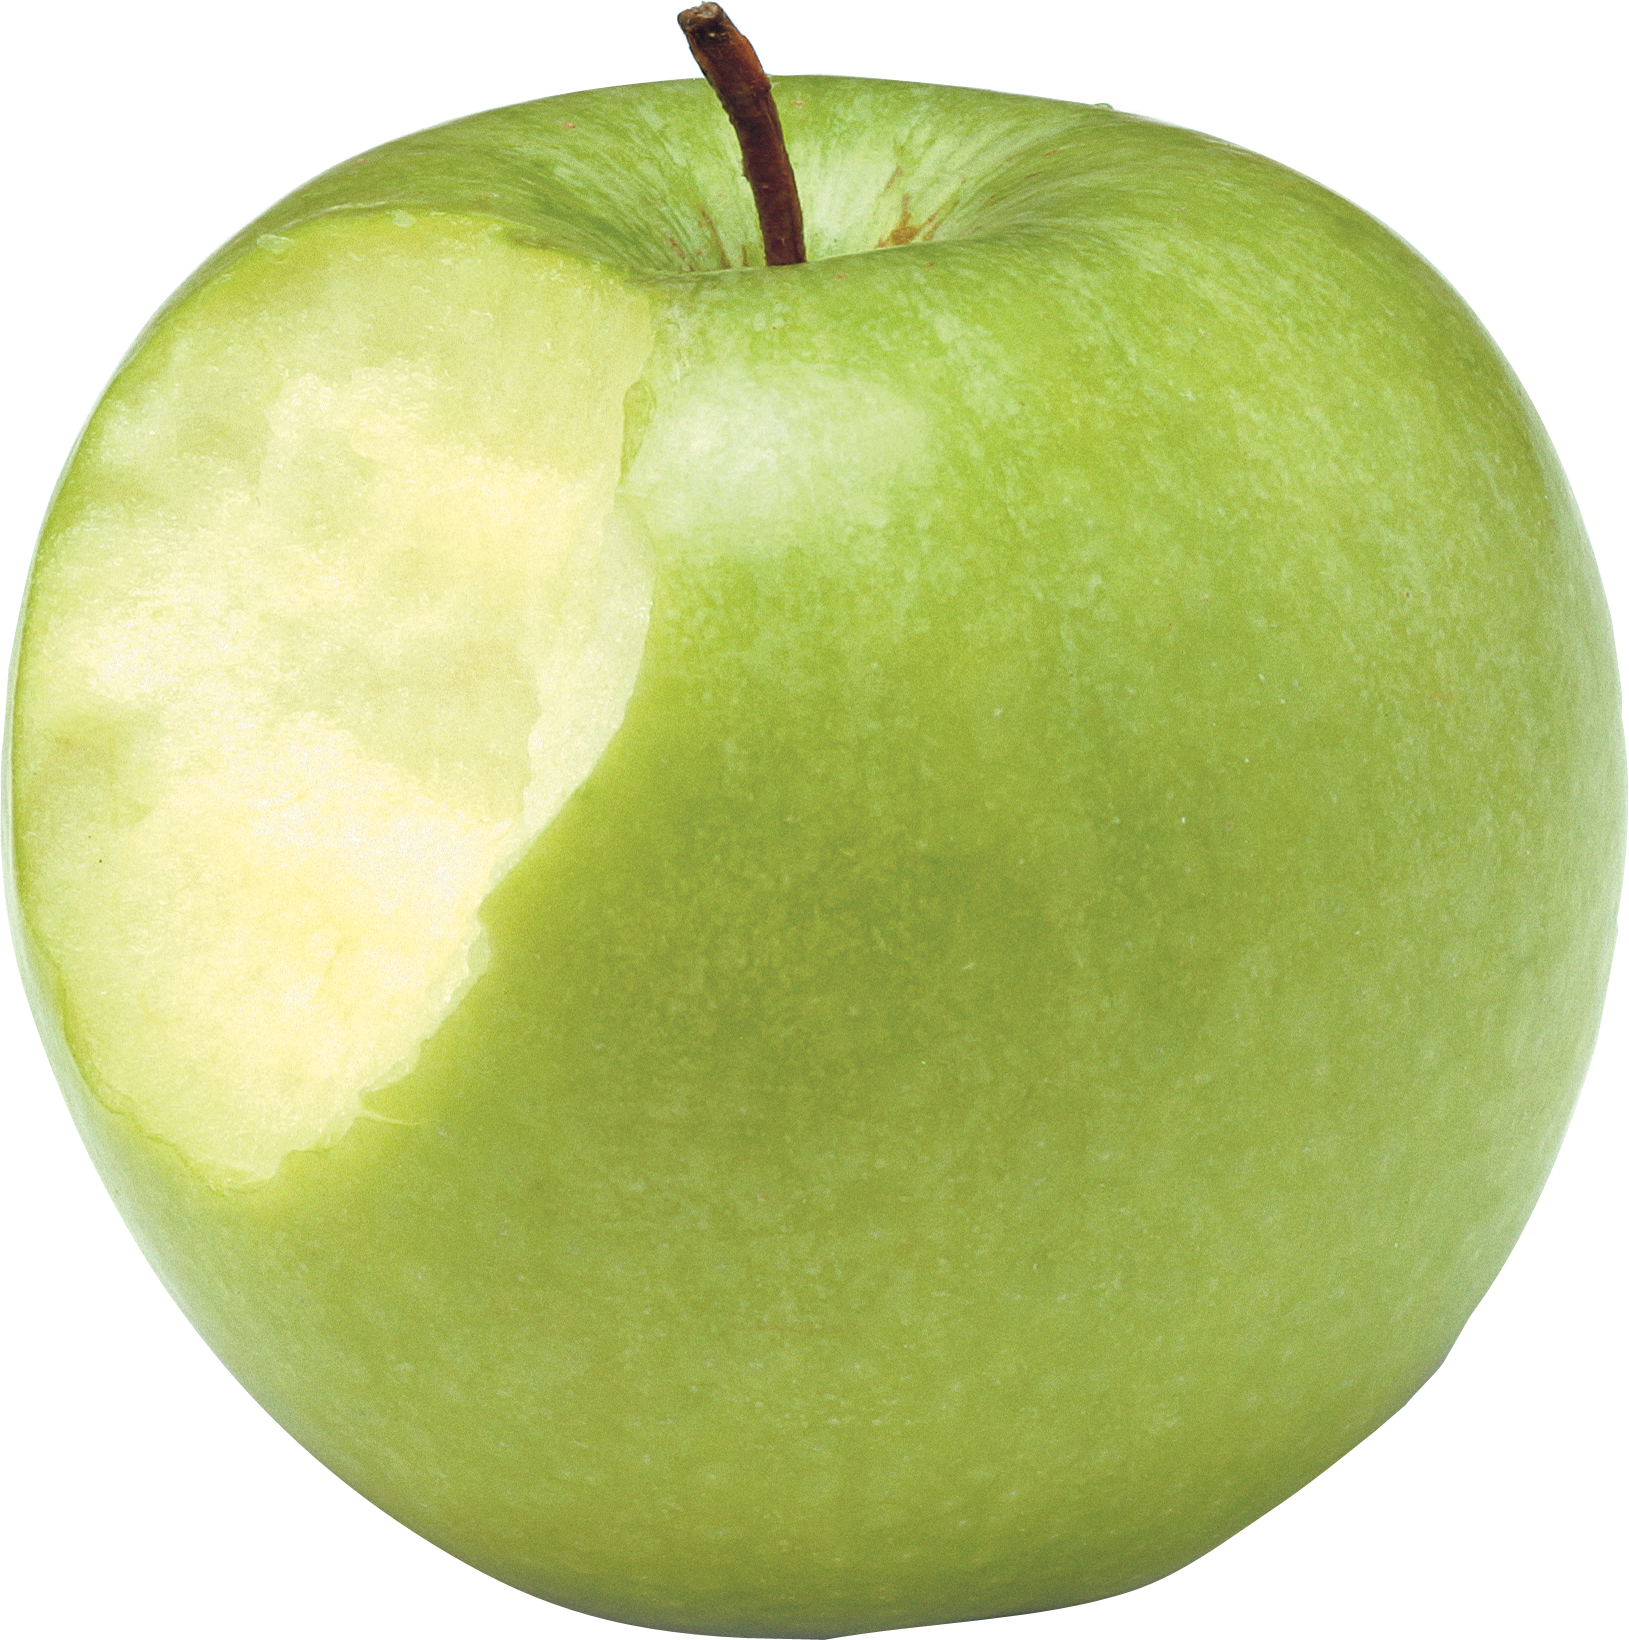 ısırılmış yeşil elma